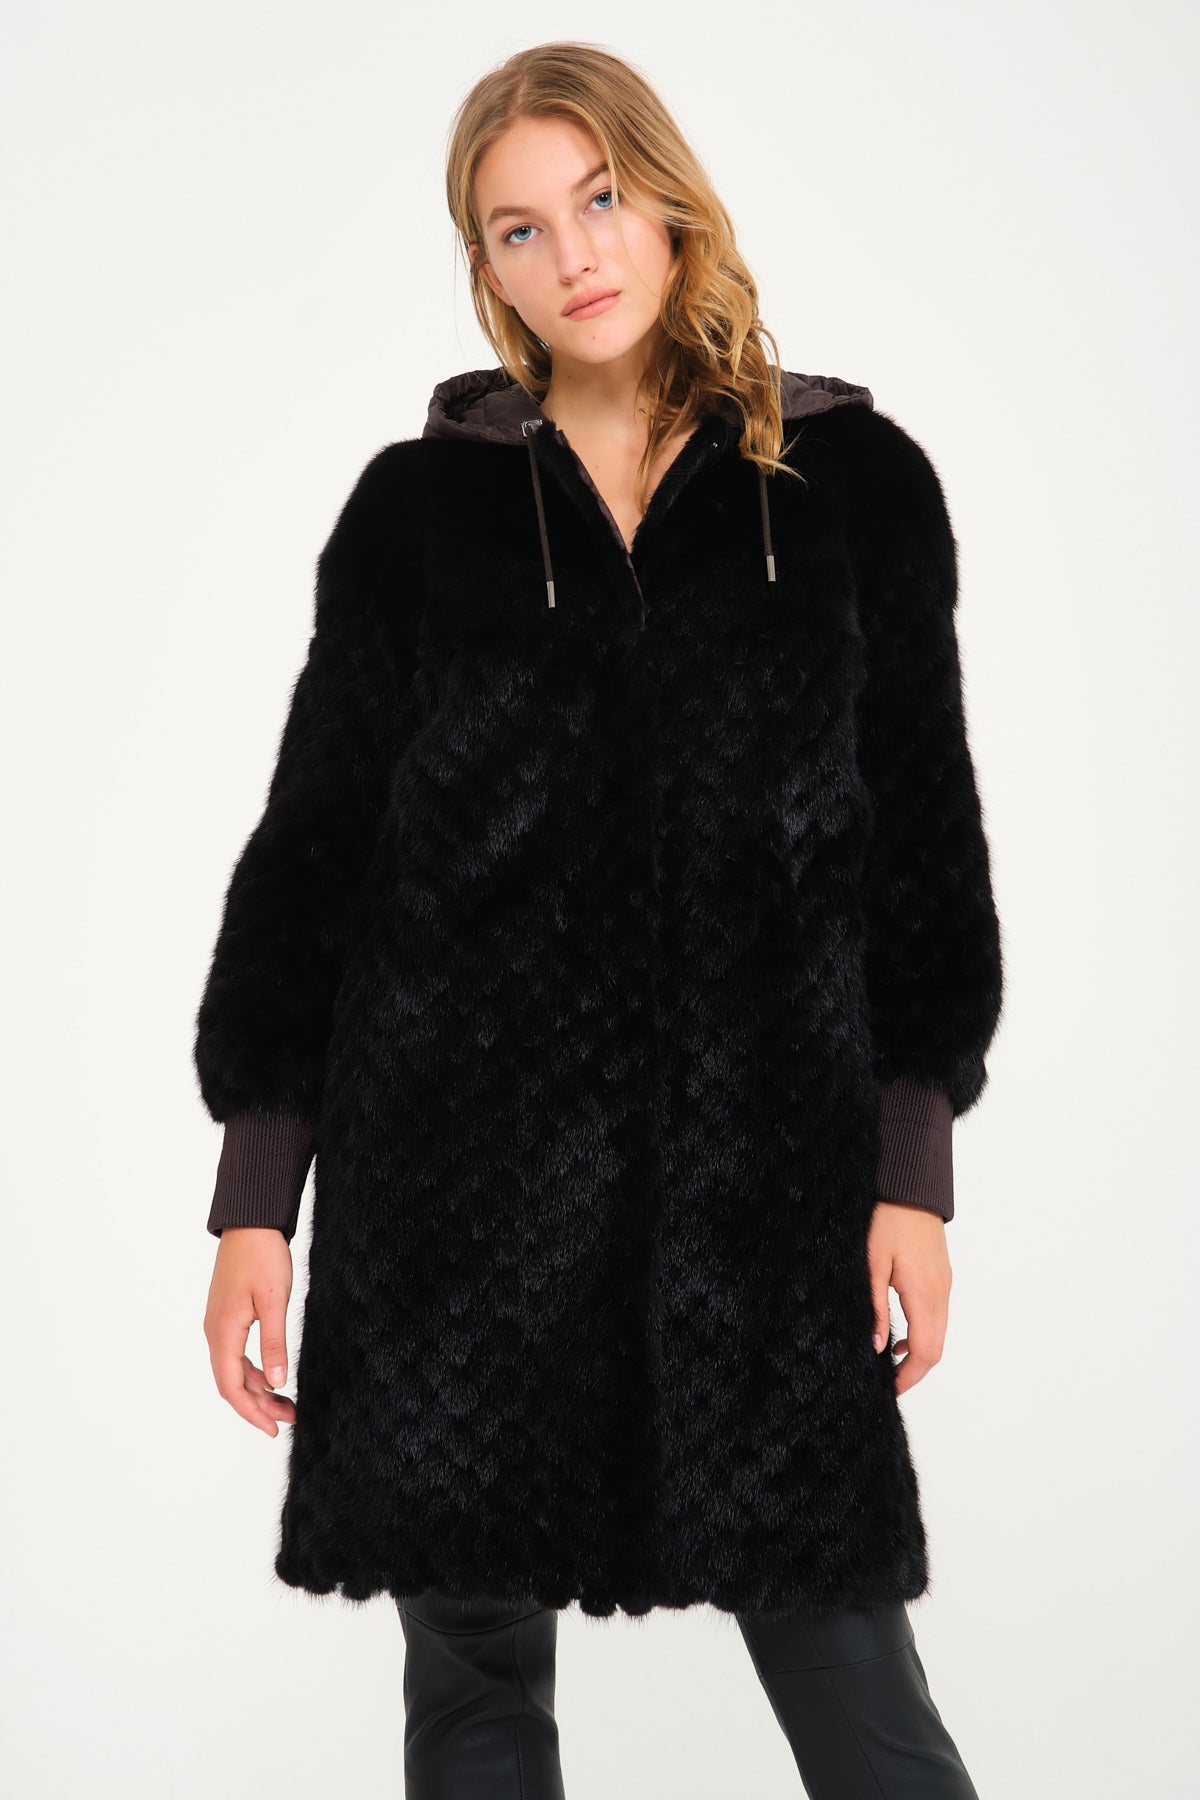 Tejiojio Trench Coats For Women Long Warm Faux Wool/Blazer Jackets Winter  Coats For Women Turndown Collar Long Sleeve Outwear at  Women's Coats  Shop